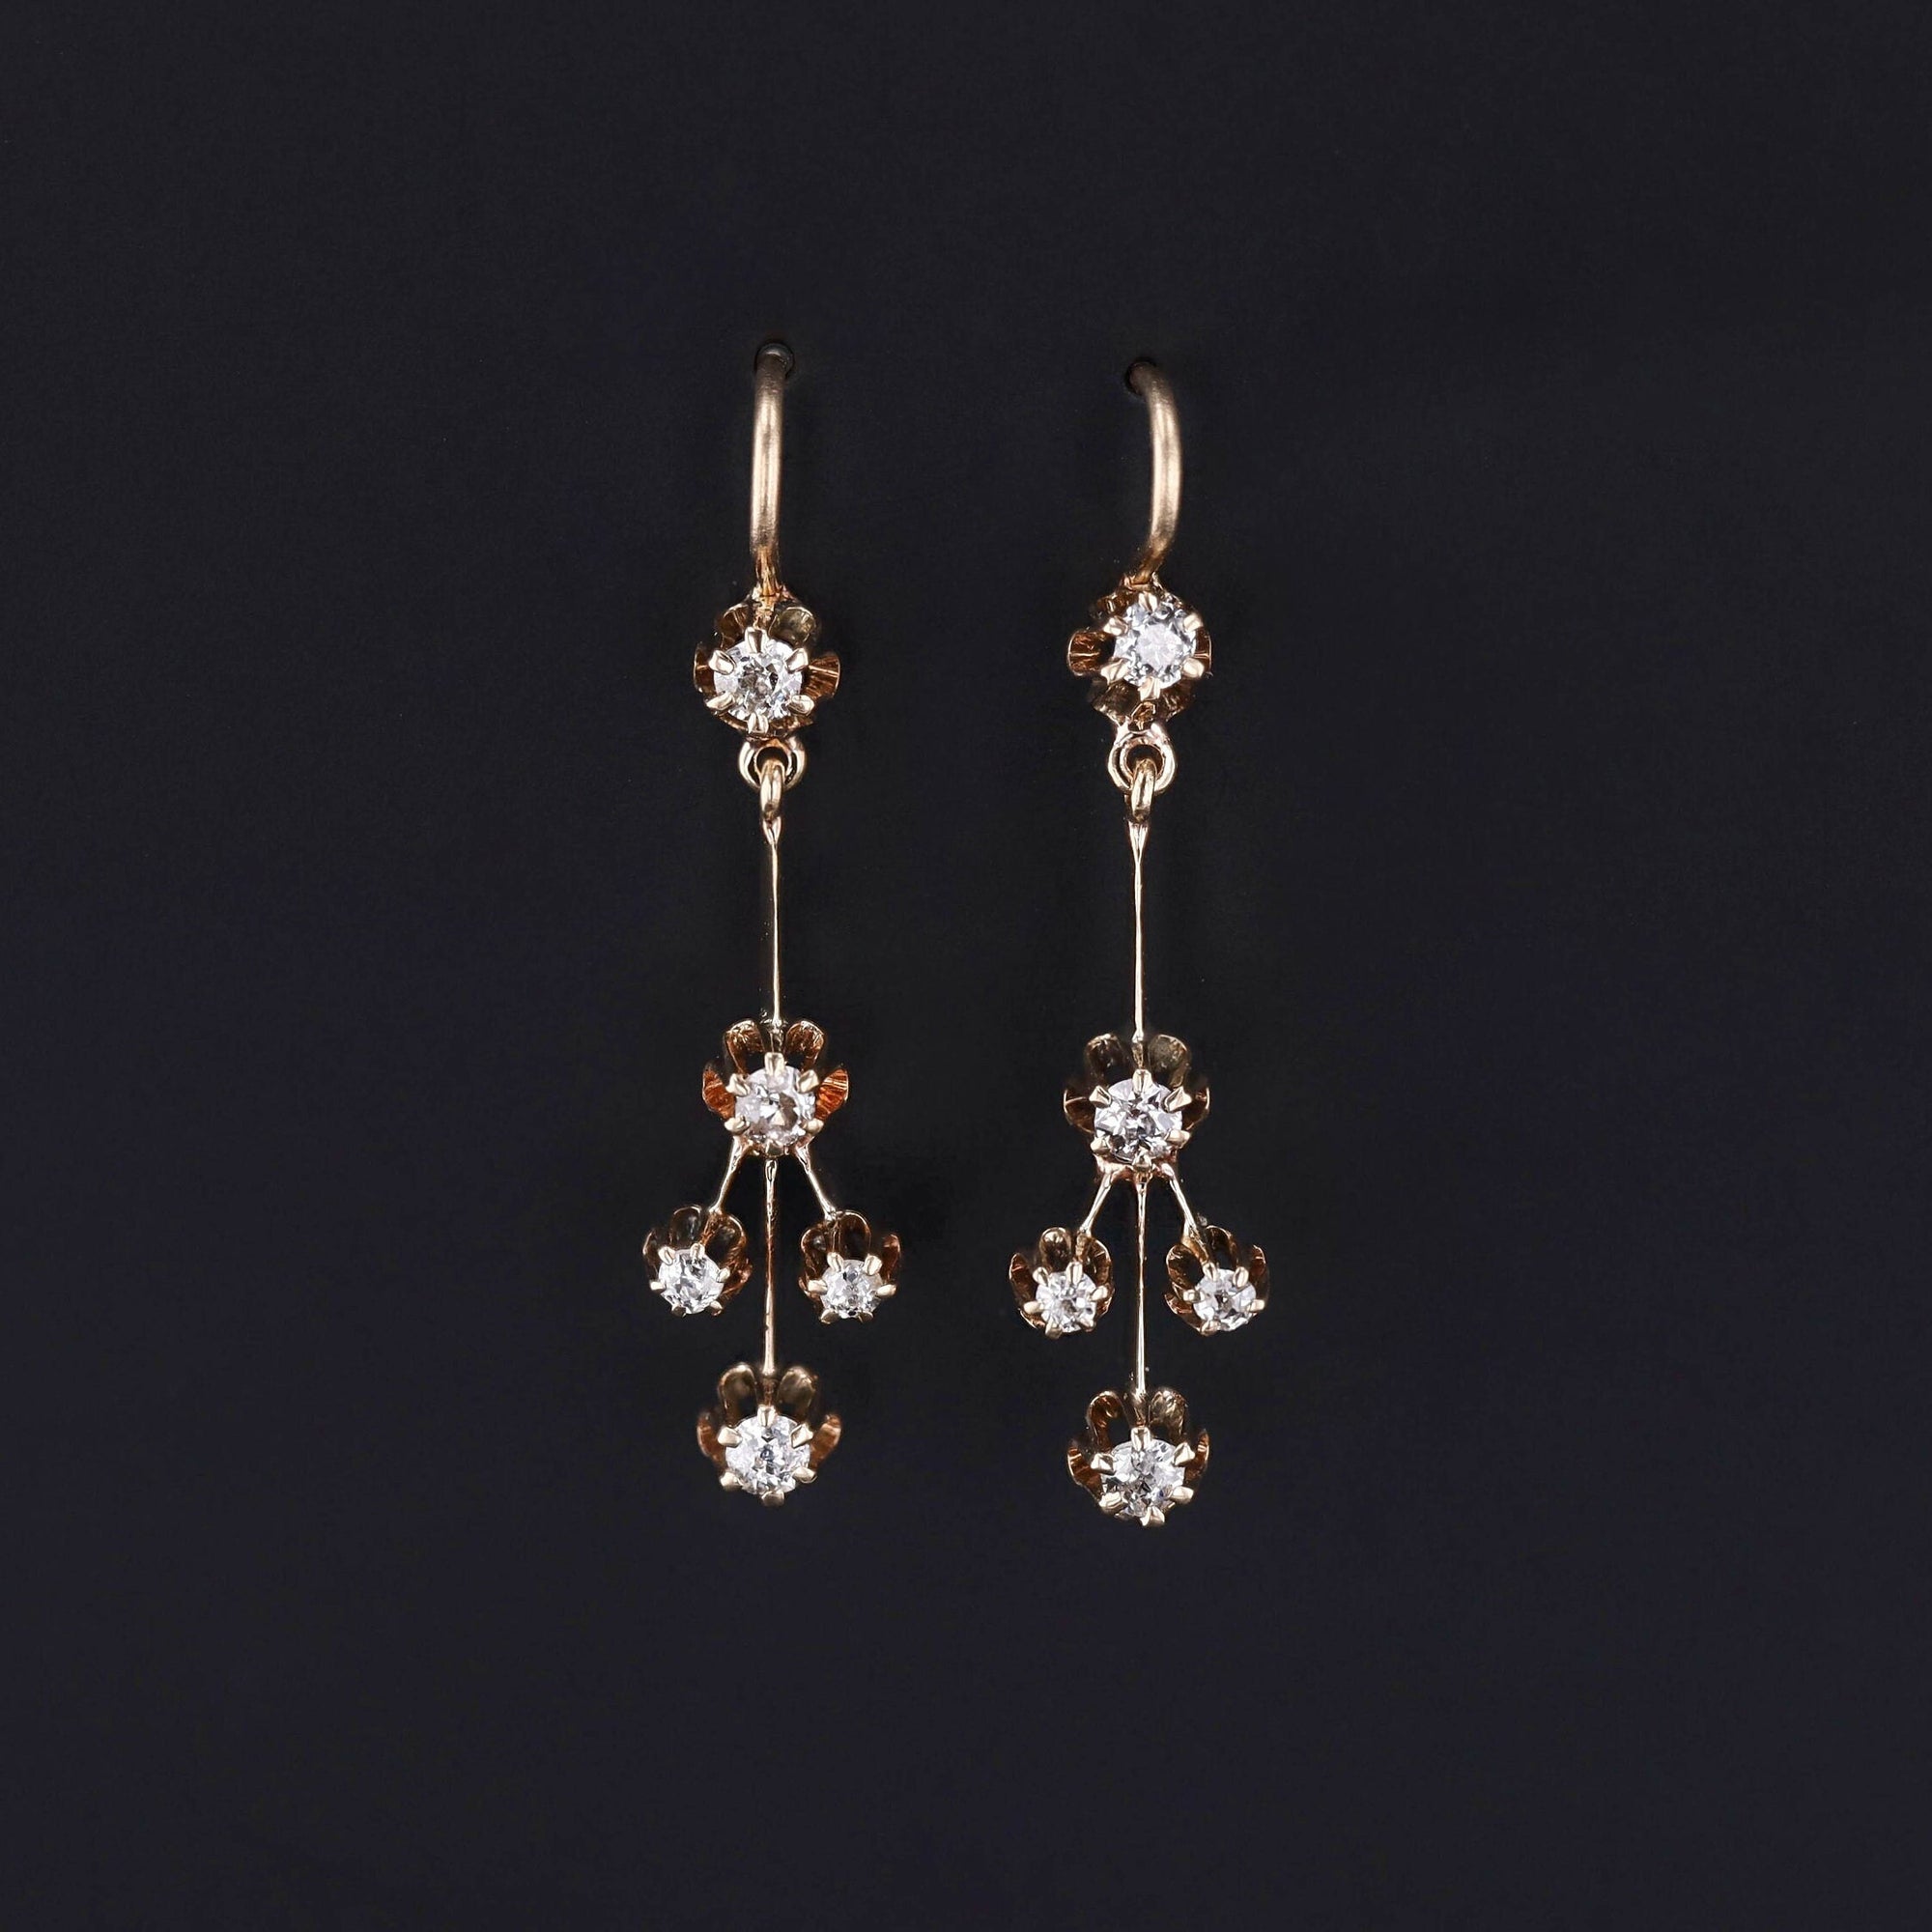 Antique Diamond Earrings | Diamond Chandelier Earrings 